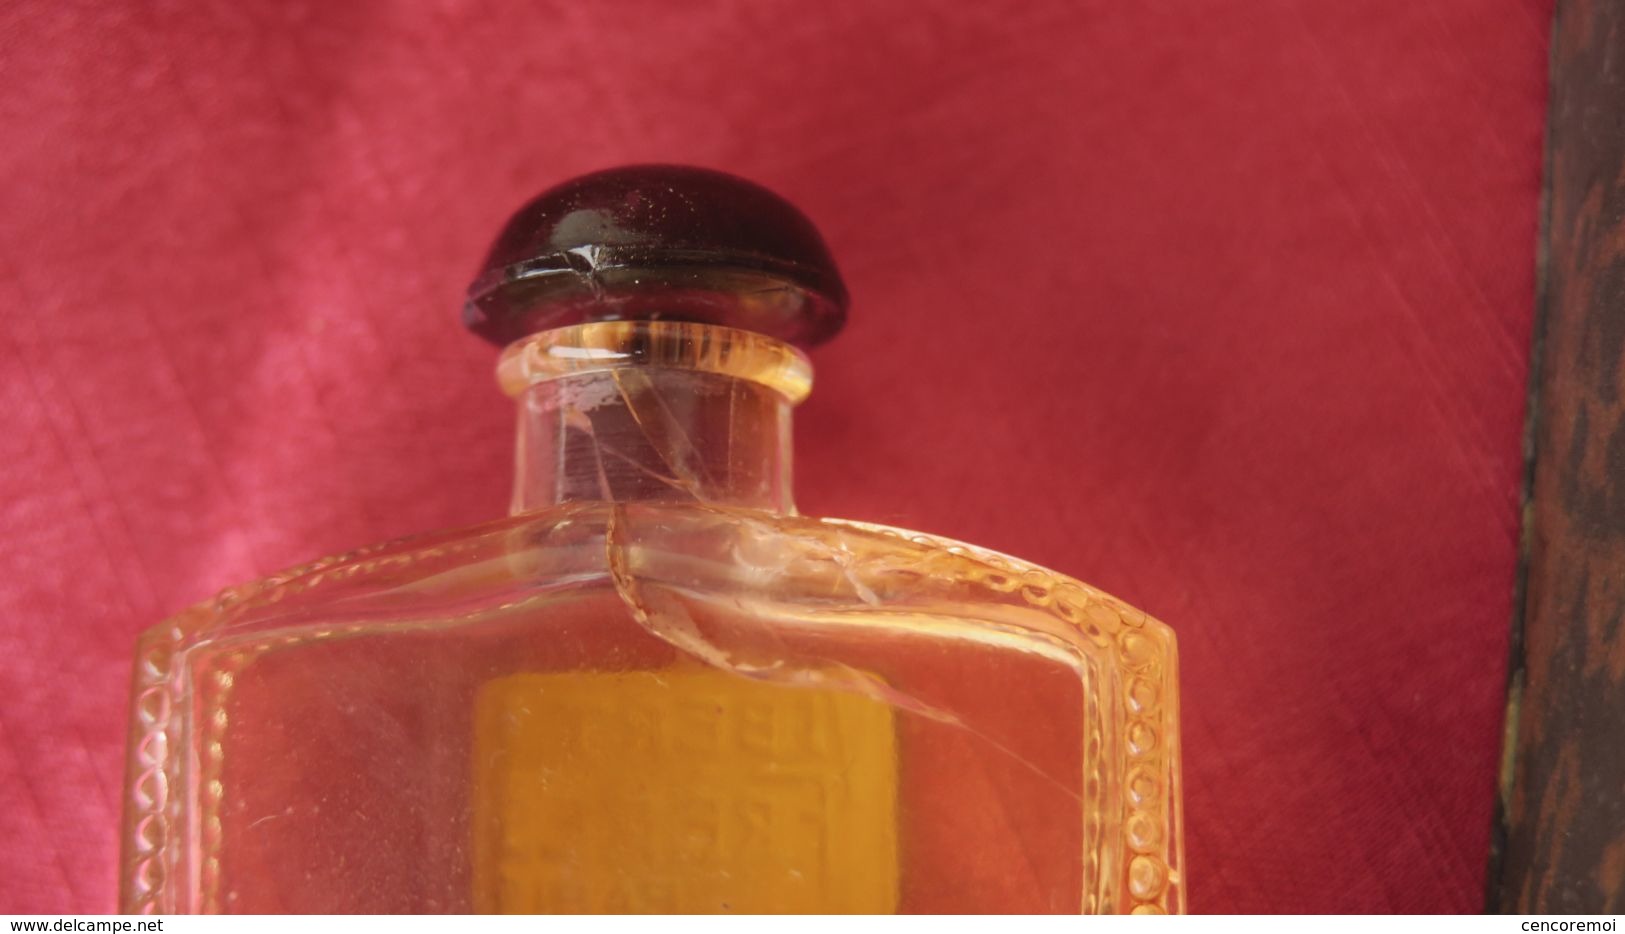 ancien flacon à parfum de collection Vibert Frères " Clochettes de Bonheur "